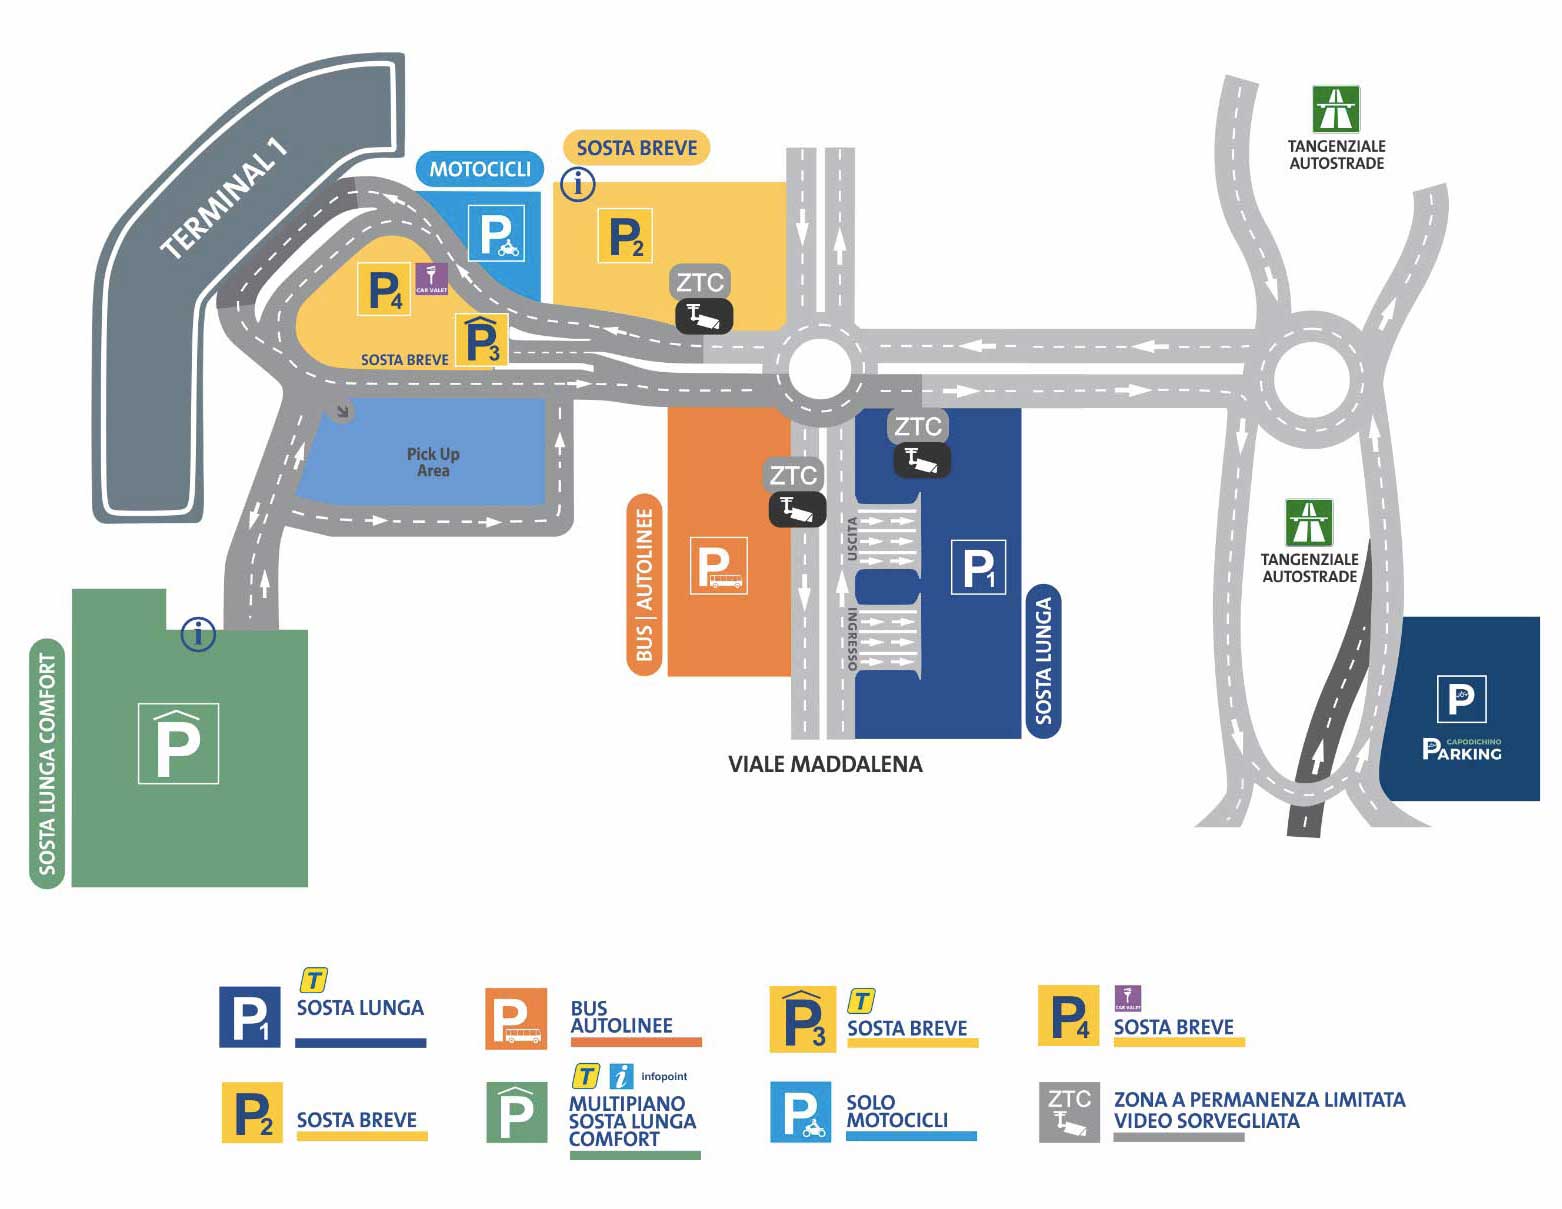 la mappa degli parcheggi ufficiali dell'aeroporto di napoli